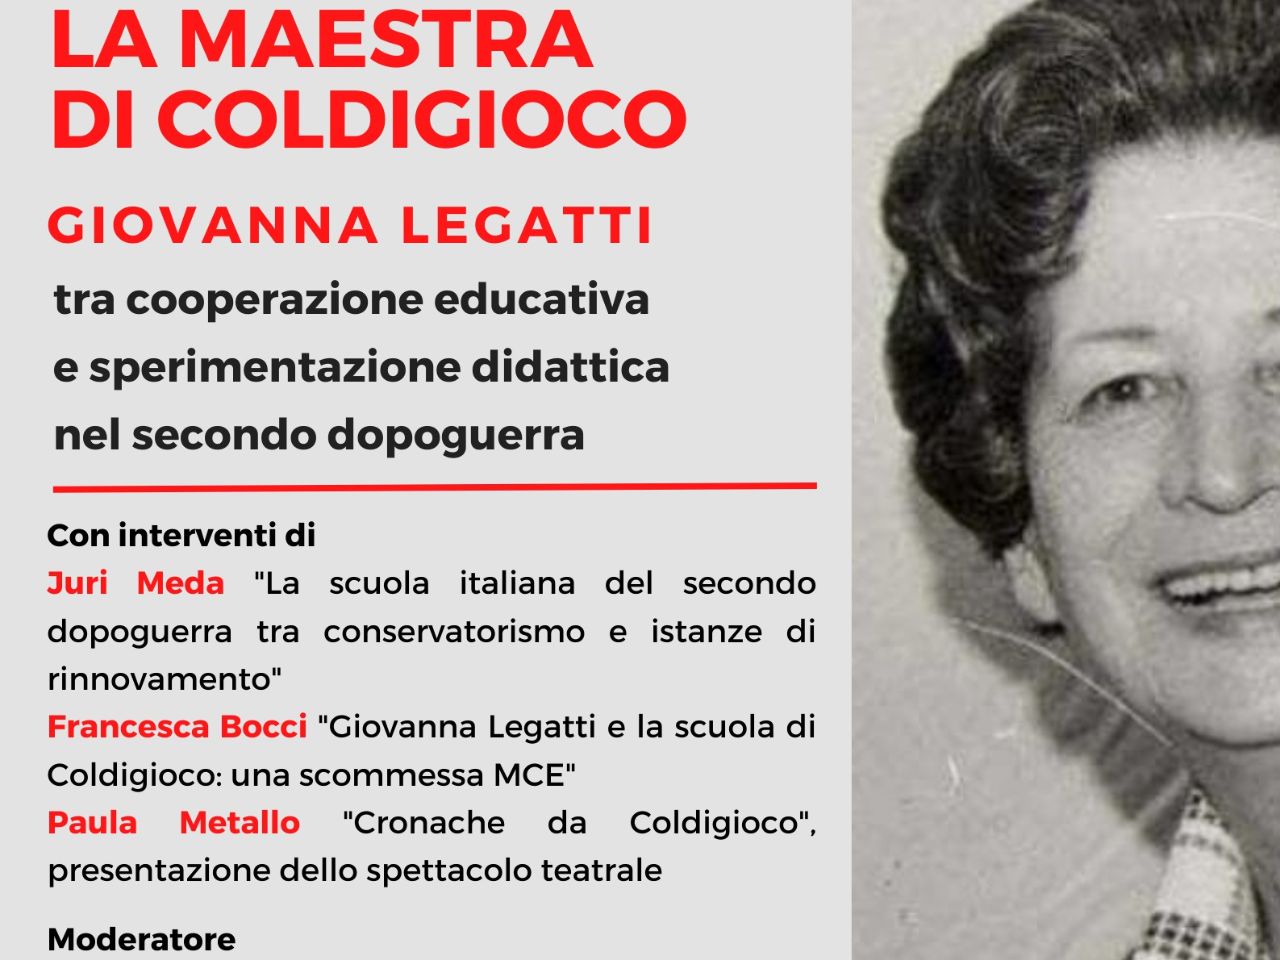 A Sant’Urbano di Apiro seminario dedicato a Giovanna Legatti: “La maestra di Coldigioco”